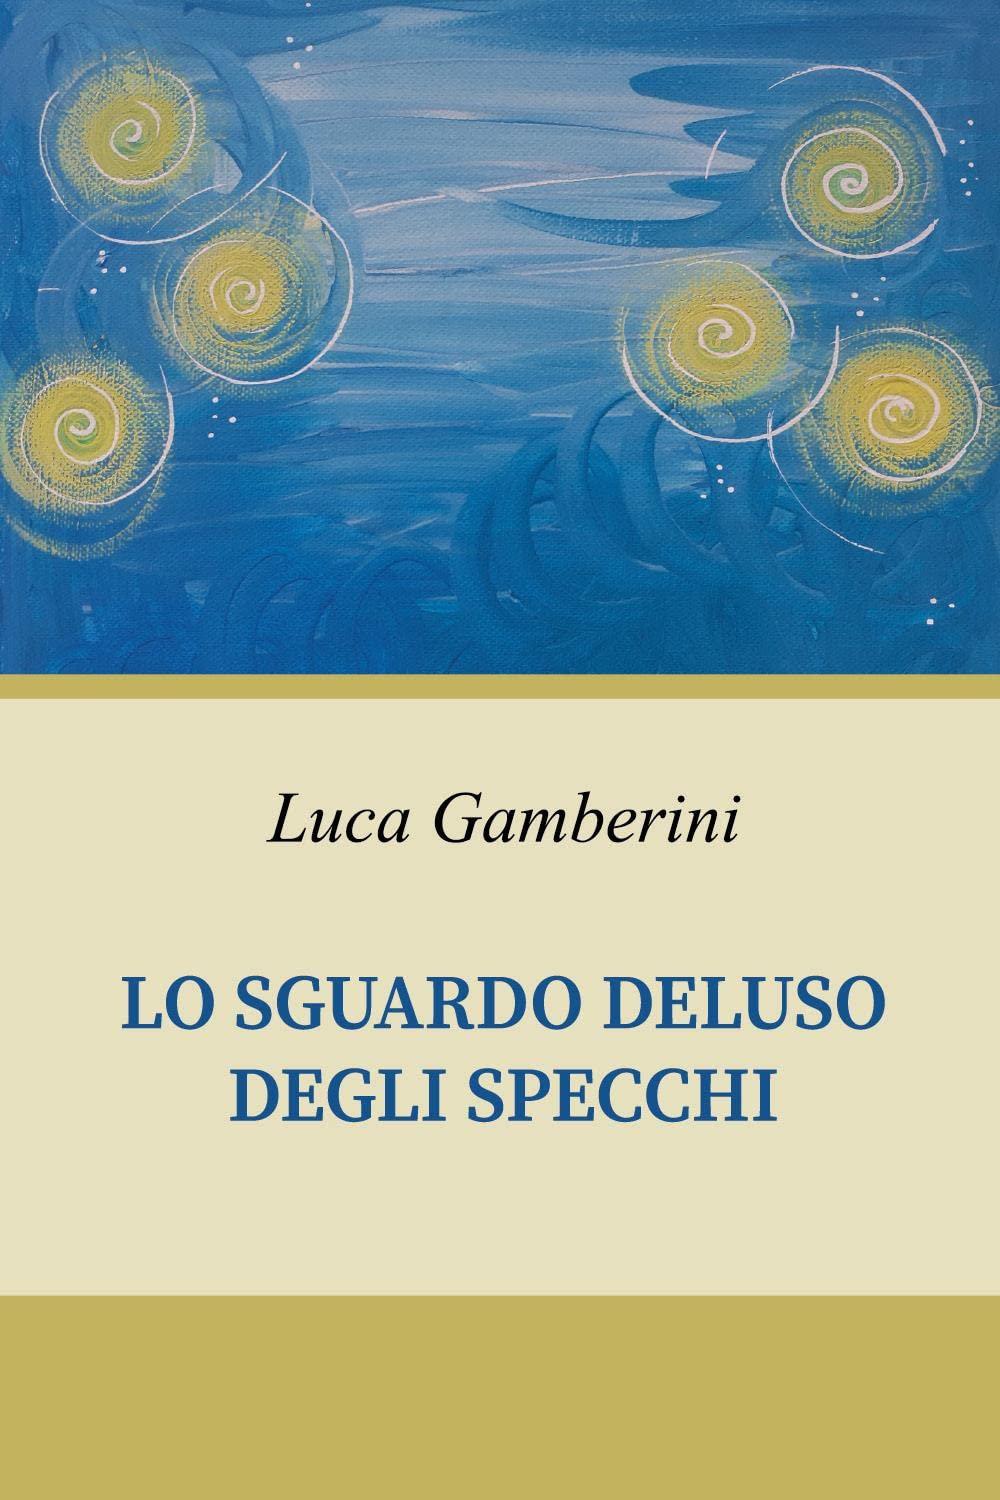 Libro "Lo sguardo deluso degli specchi" di Luca Gamberini